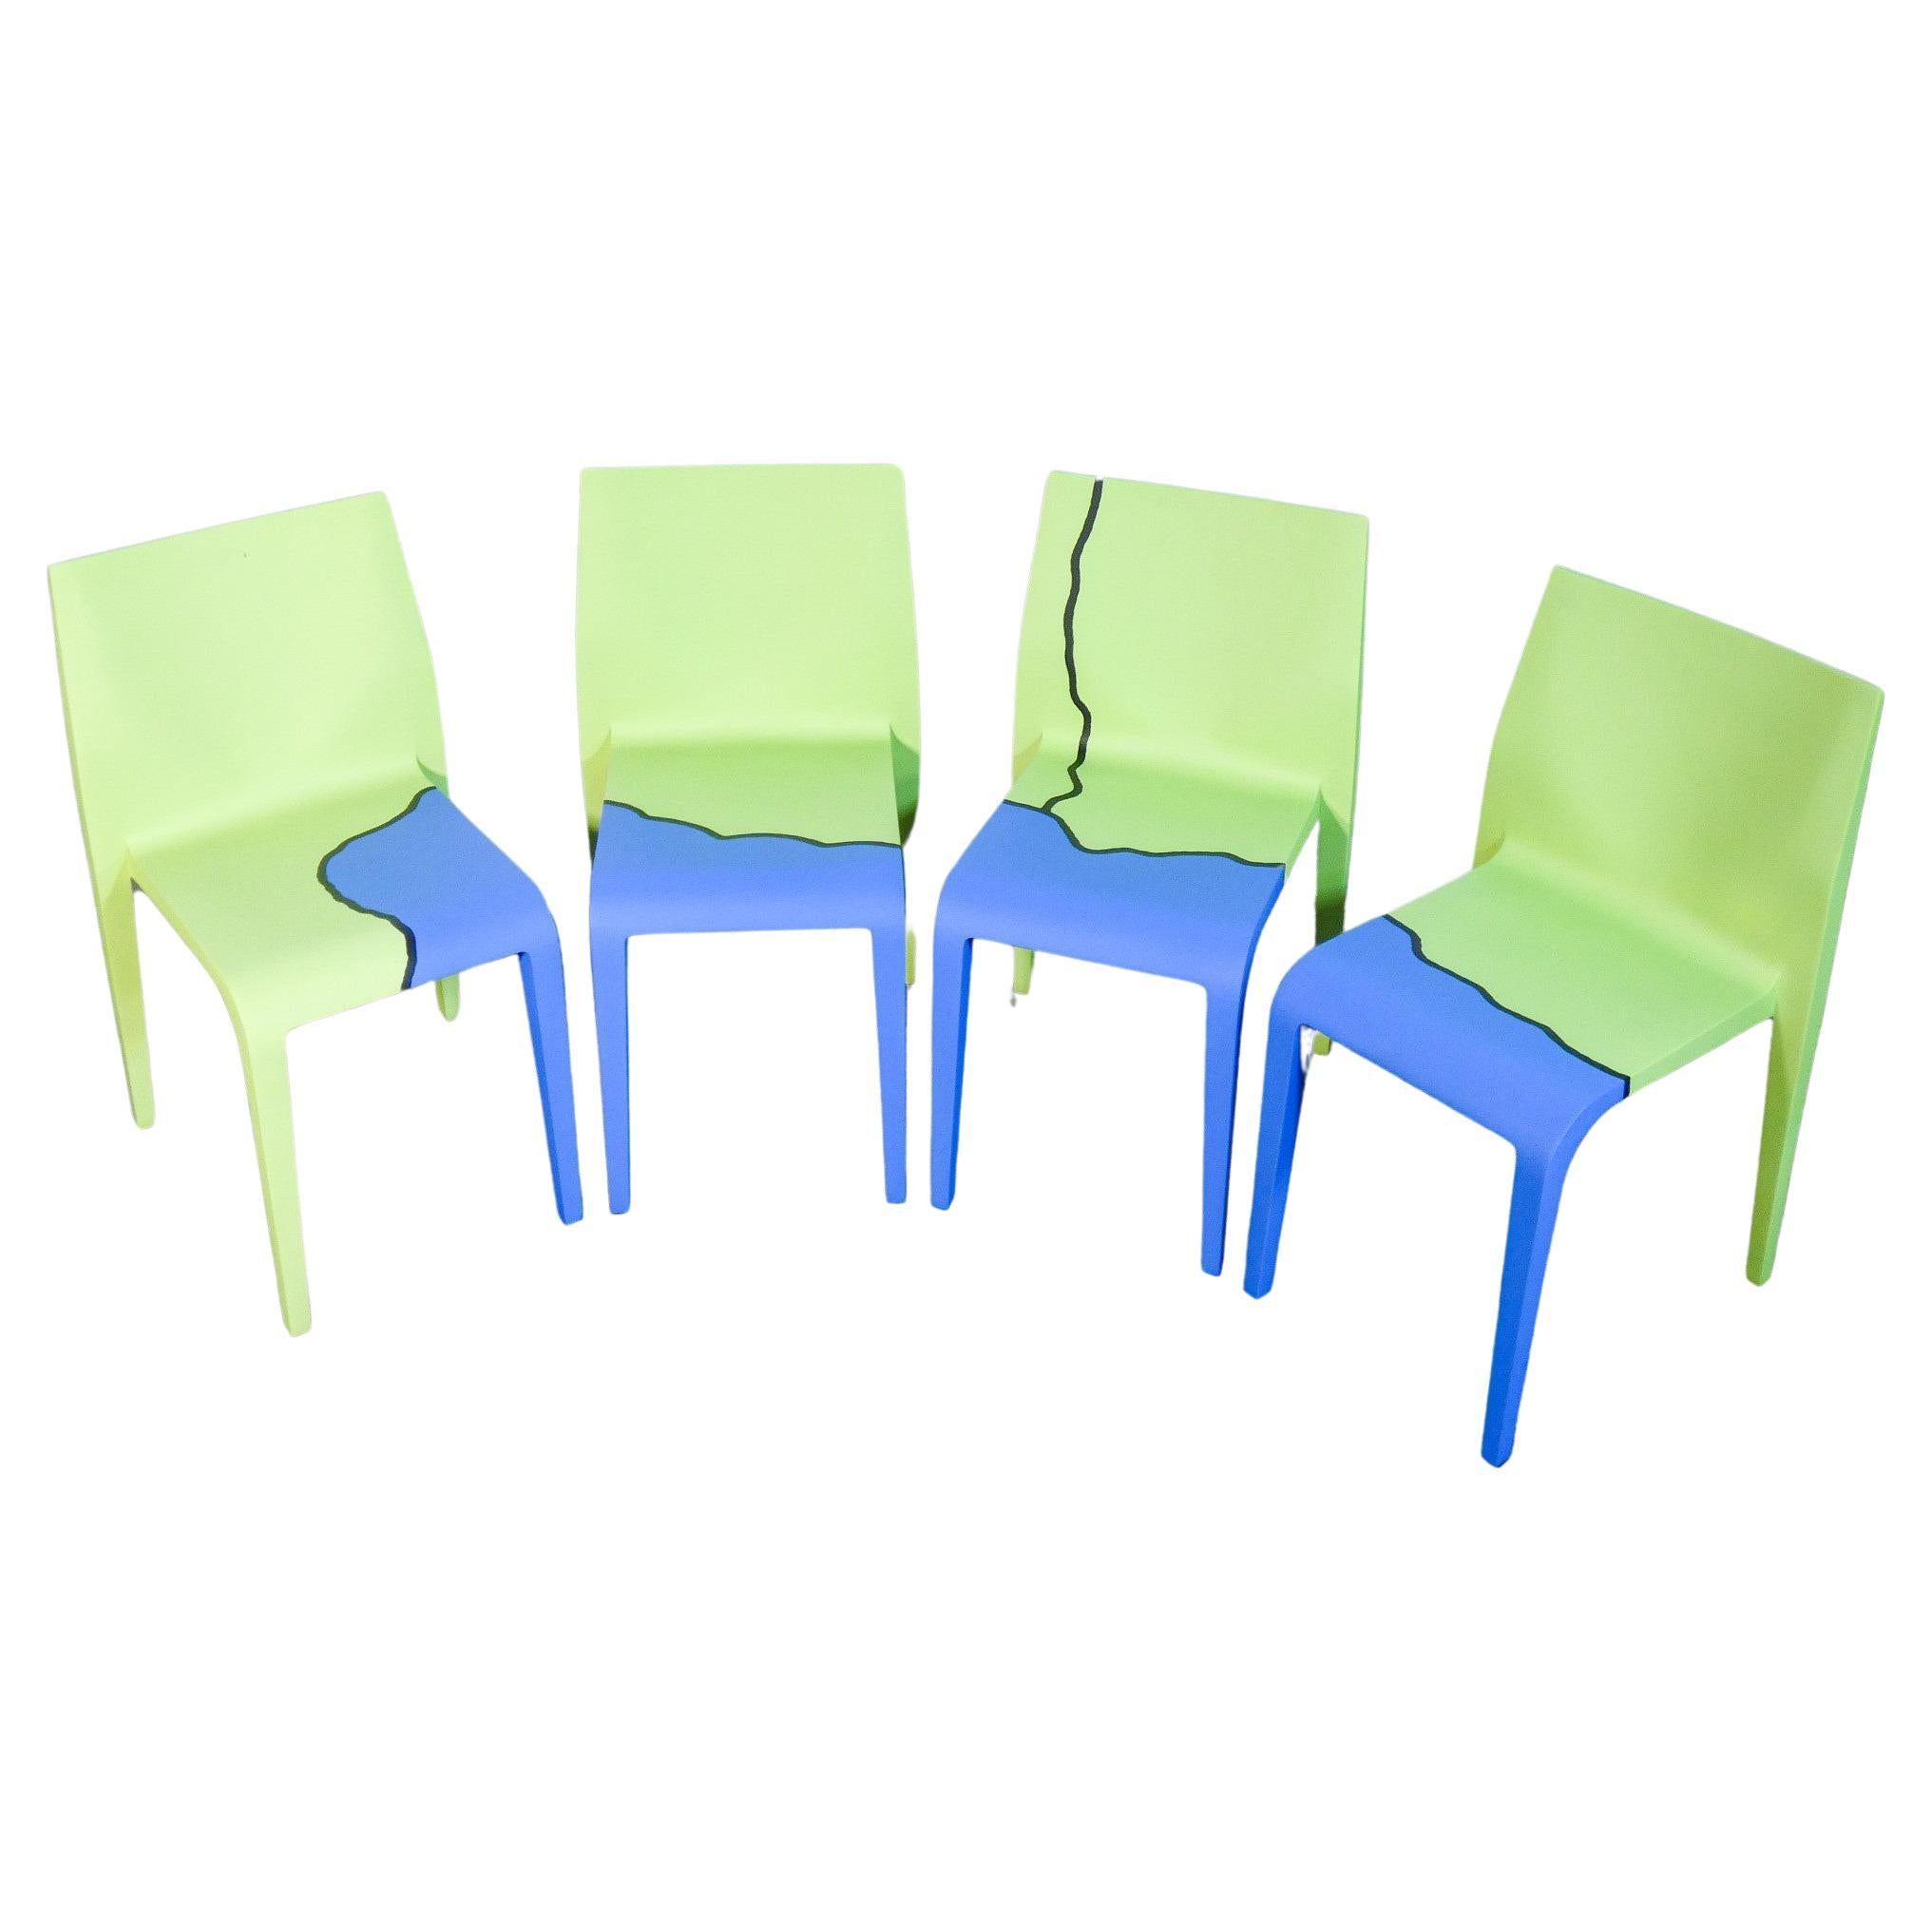 Set di 4 sedie Laleggera, parte dell'opera "Mezzoterra Mezzomare" di PISTOLETTO